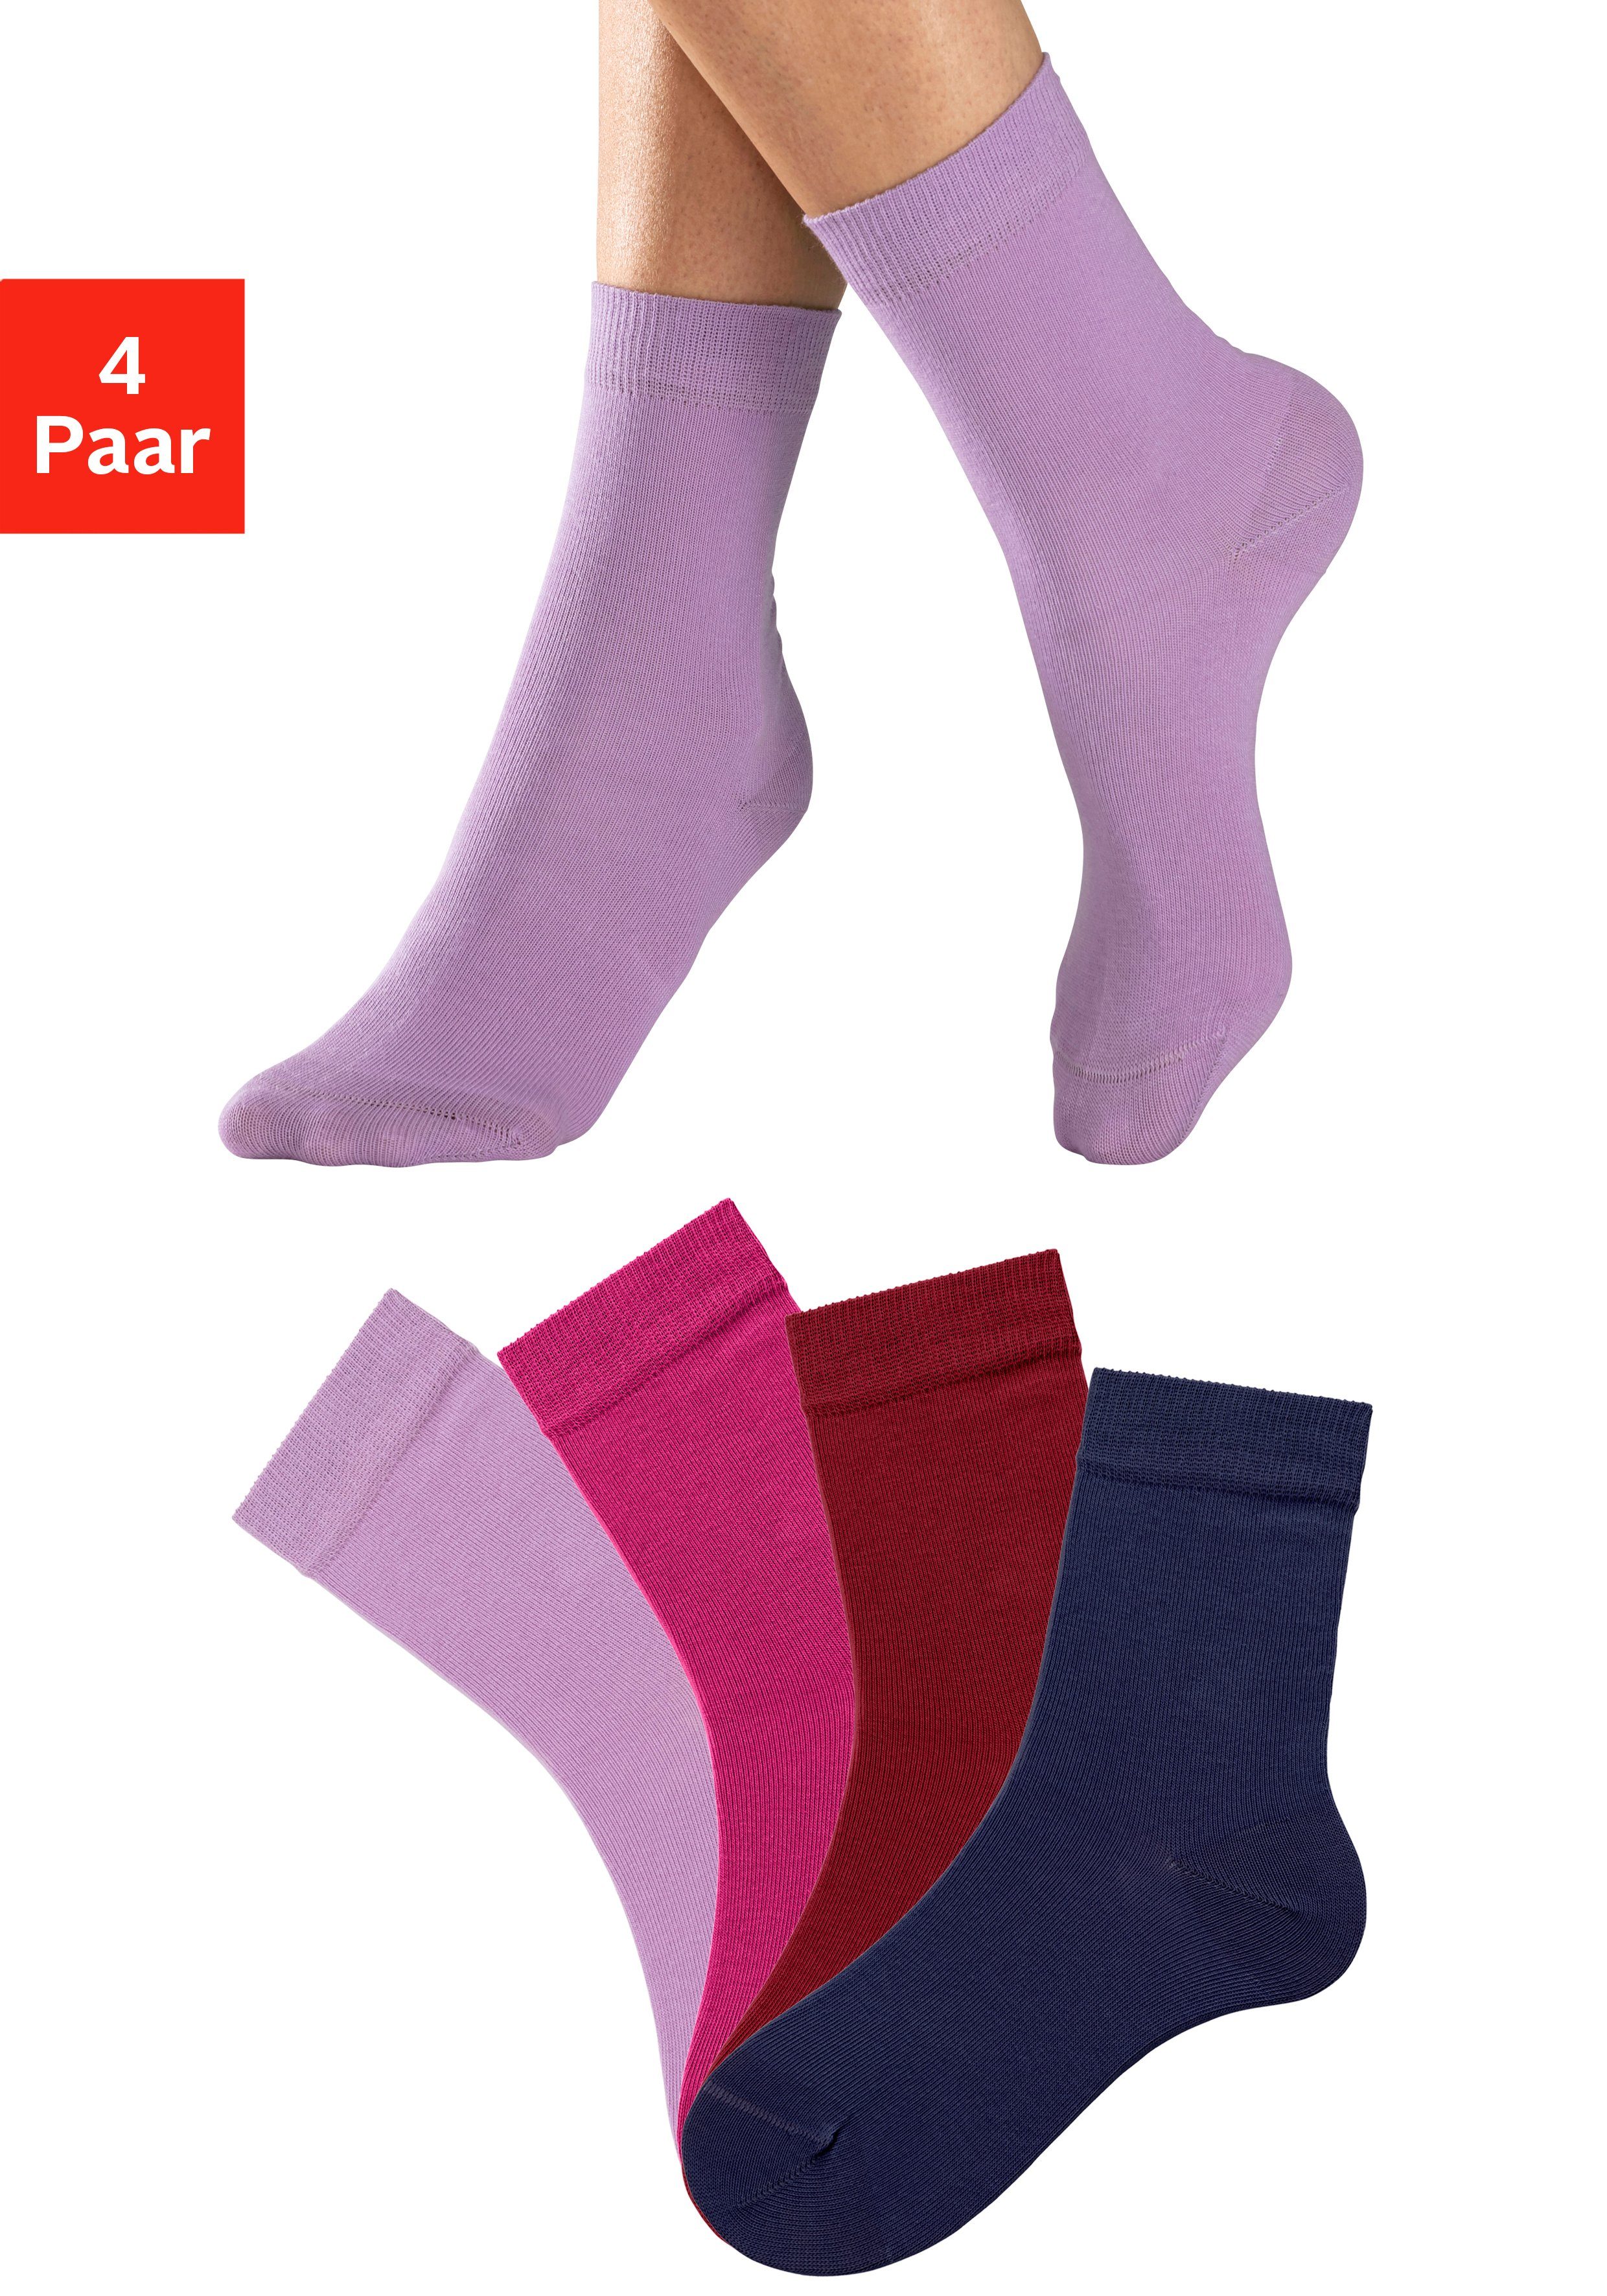 H.I.S Socken (Set, 4-Paar) in unterschiedlichen Farbzusammenstellungen 1x flieder, 1x pink, 1x blau, 1x bordeaux